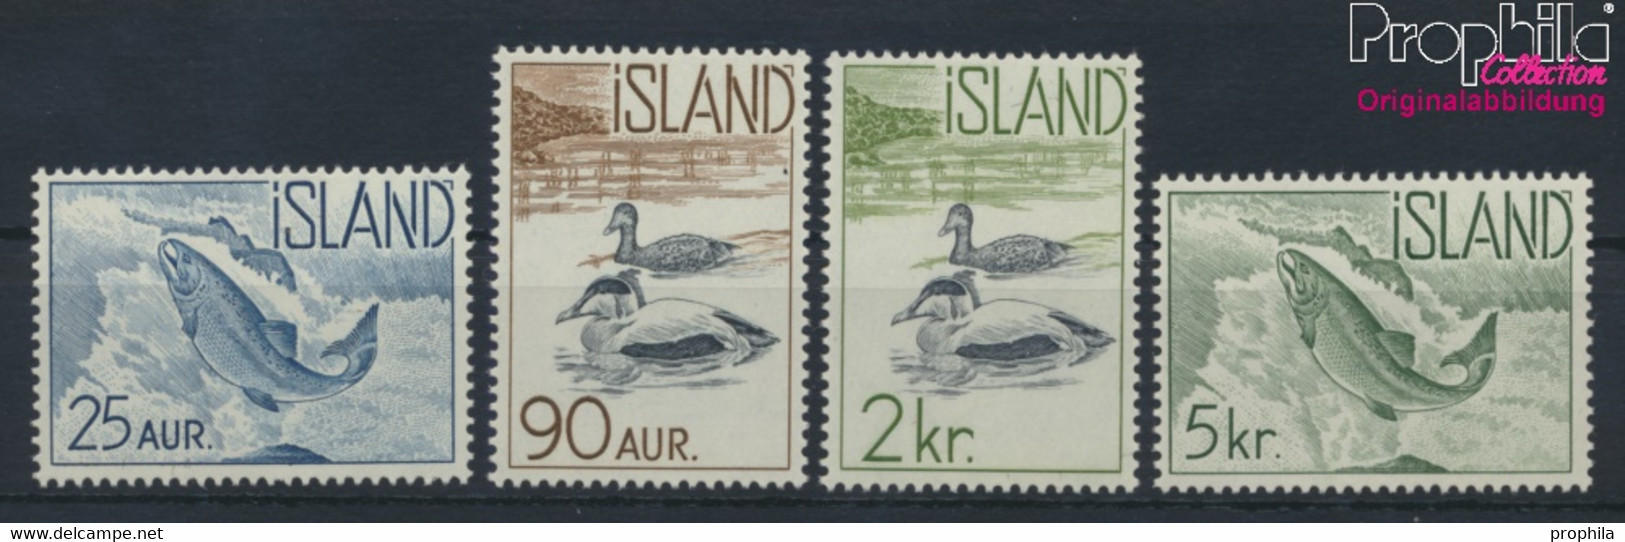 Island 335-338 (kompl.Ausg.) Postfrisch 1959 Freimarken: Einheimische Fauna (9955244 - Unused Stamps